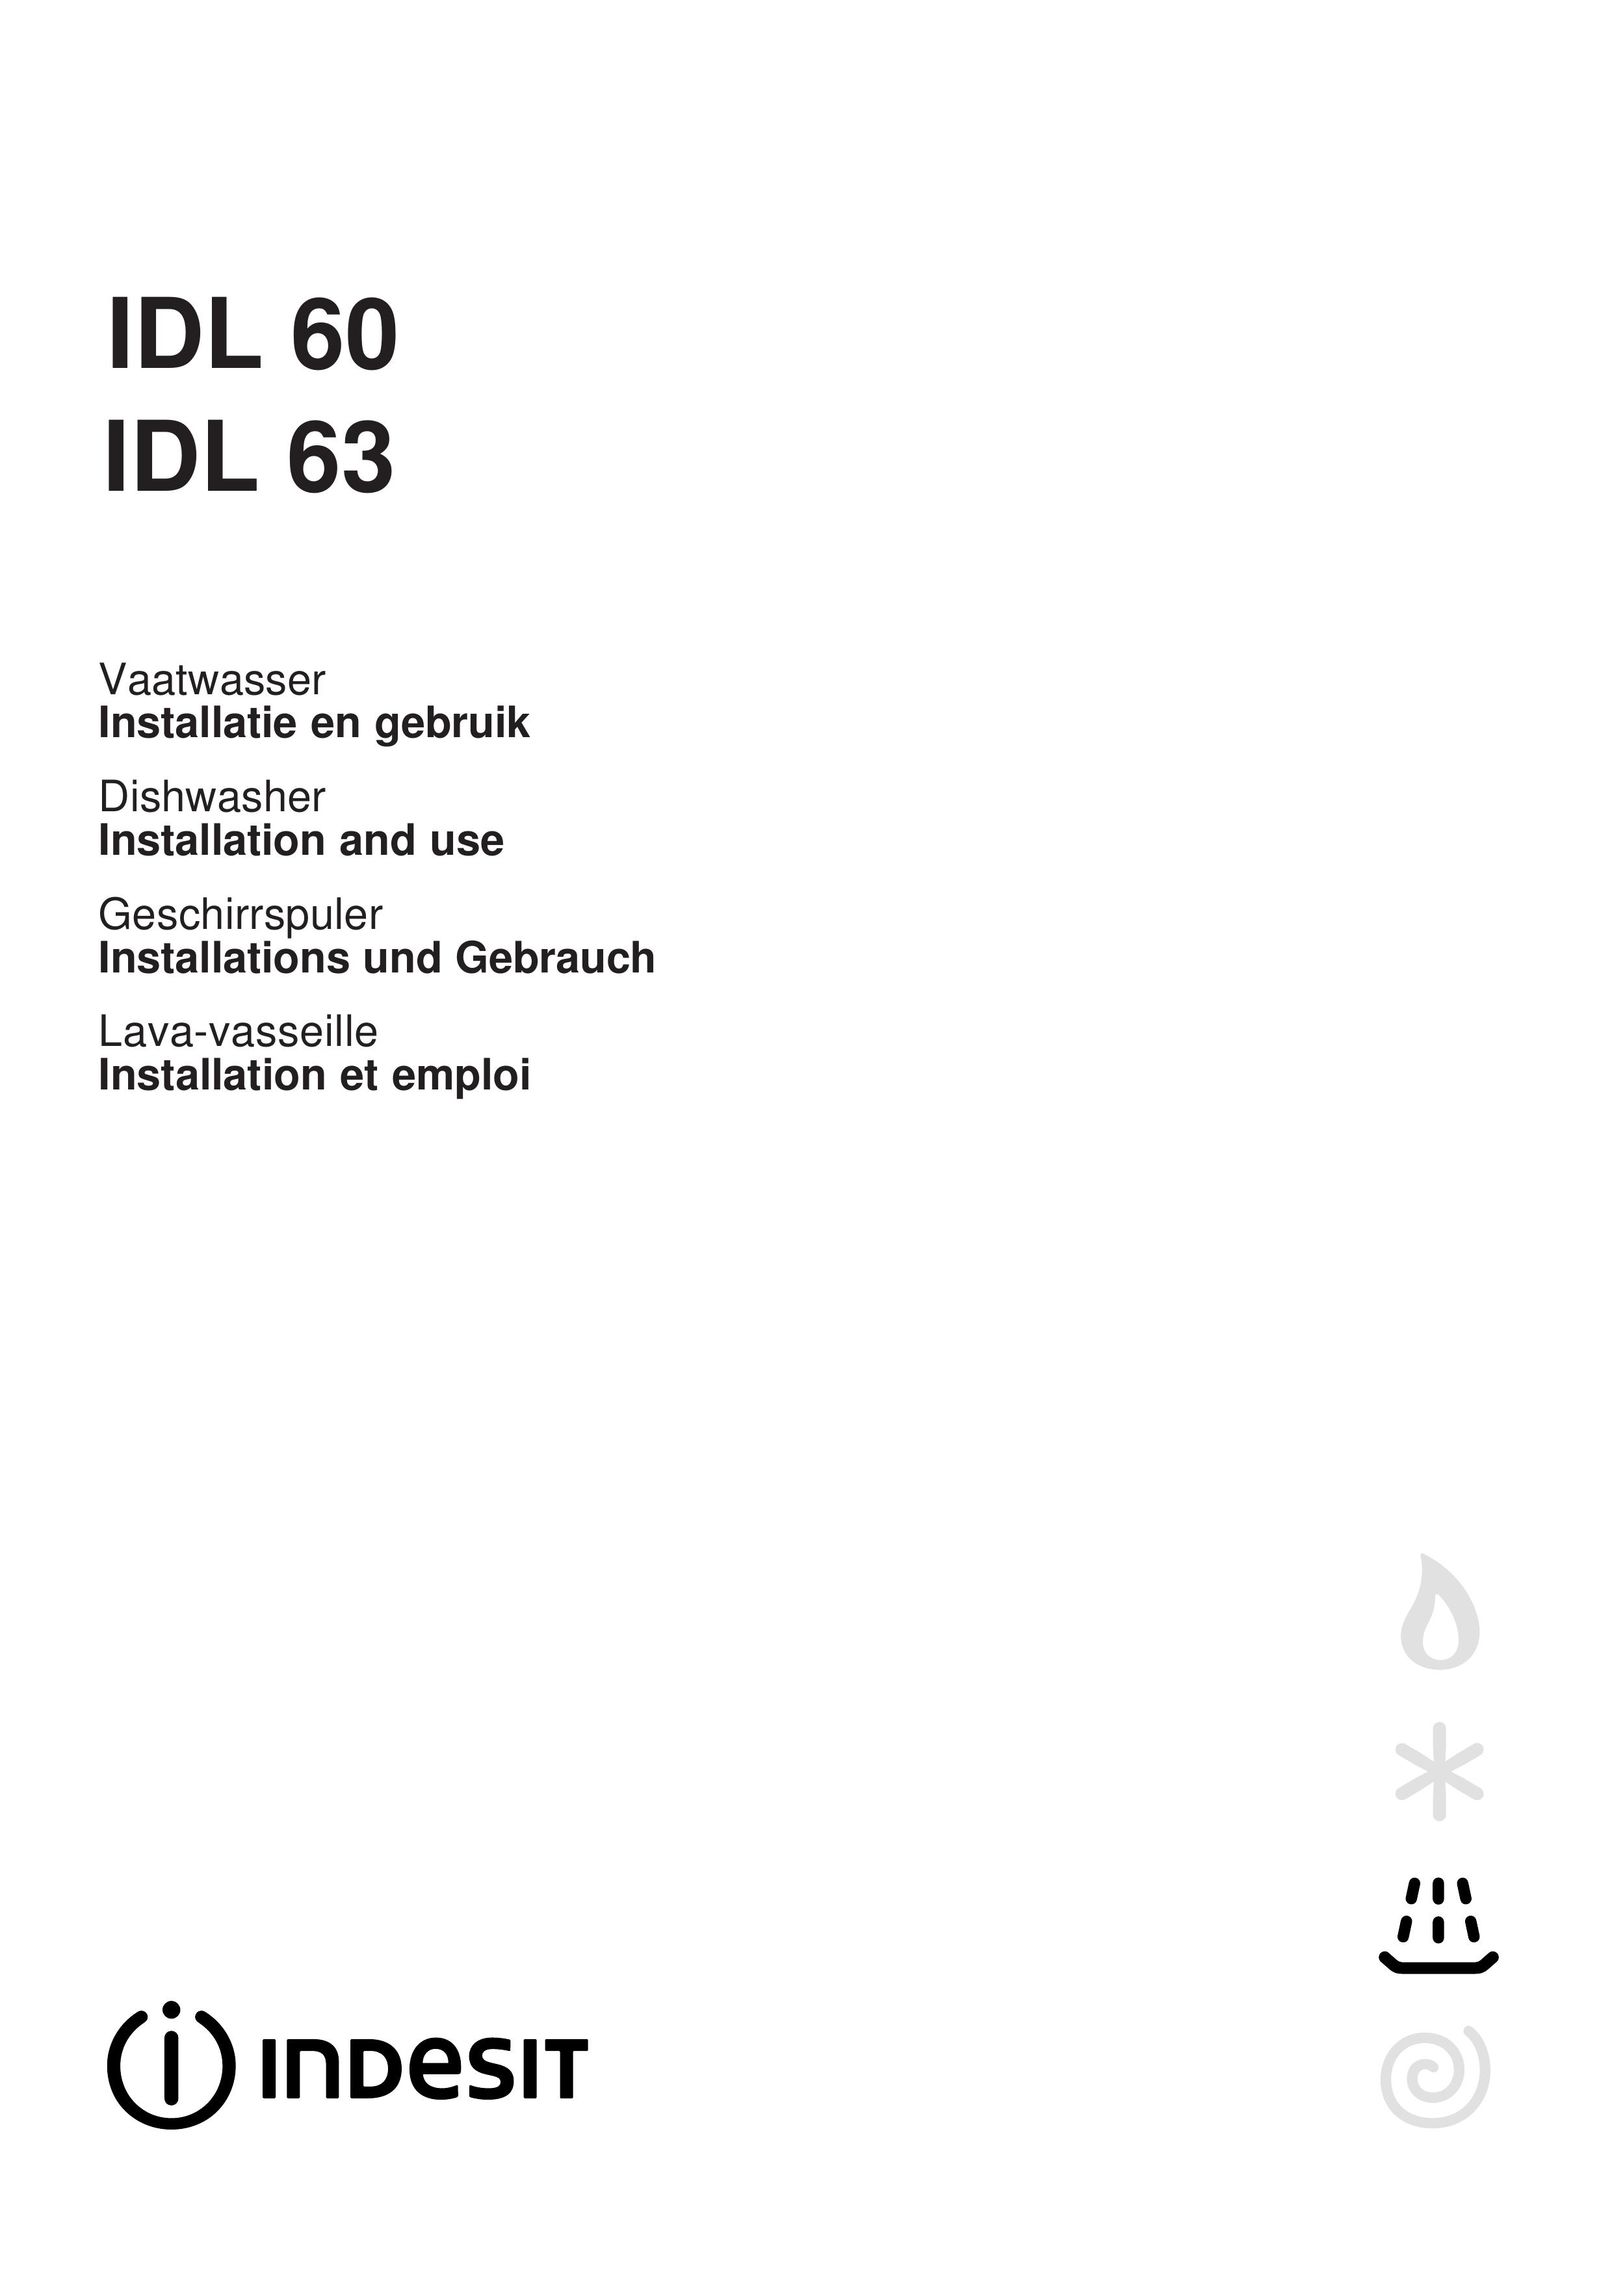 Indesit IDL 63 Dishwasher User Manual